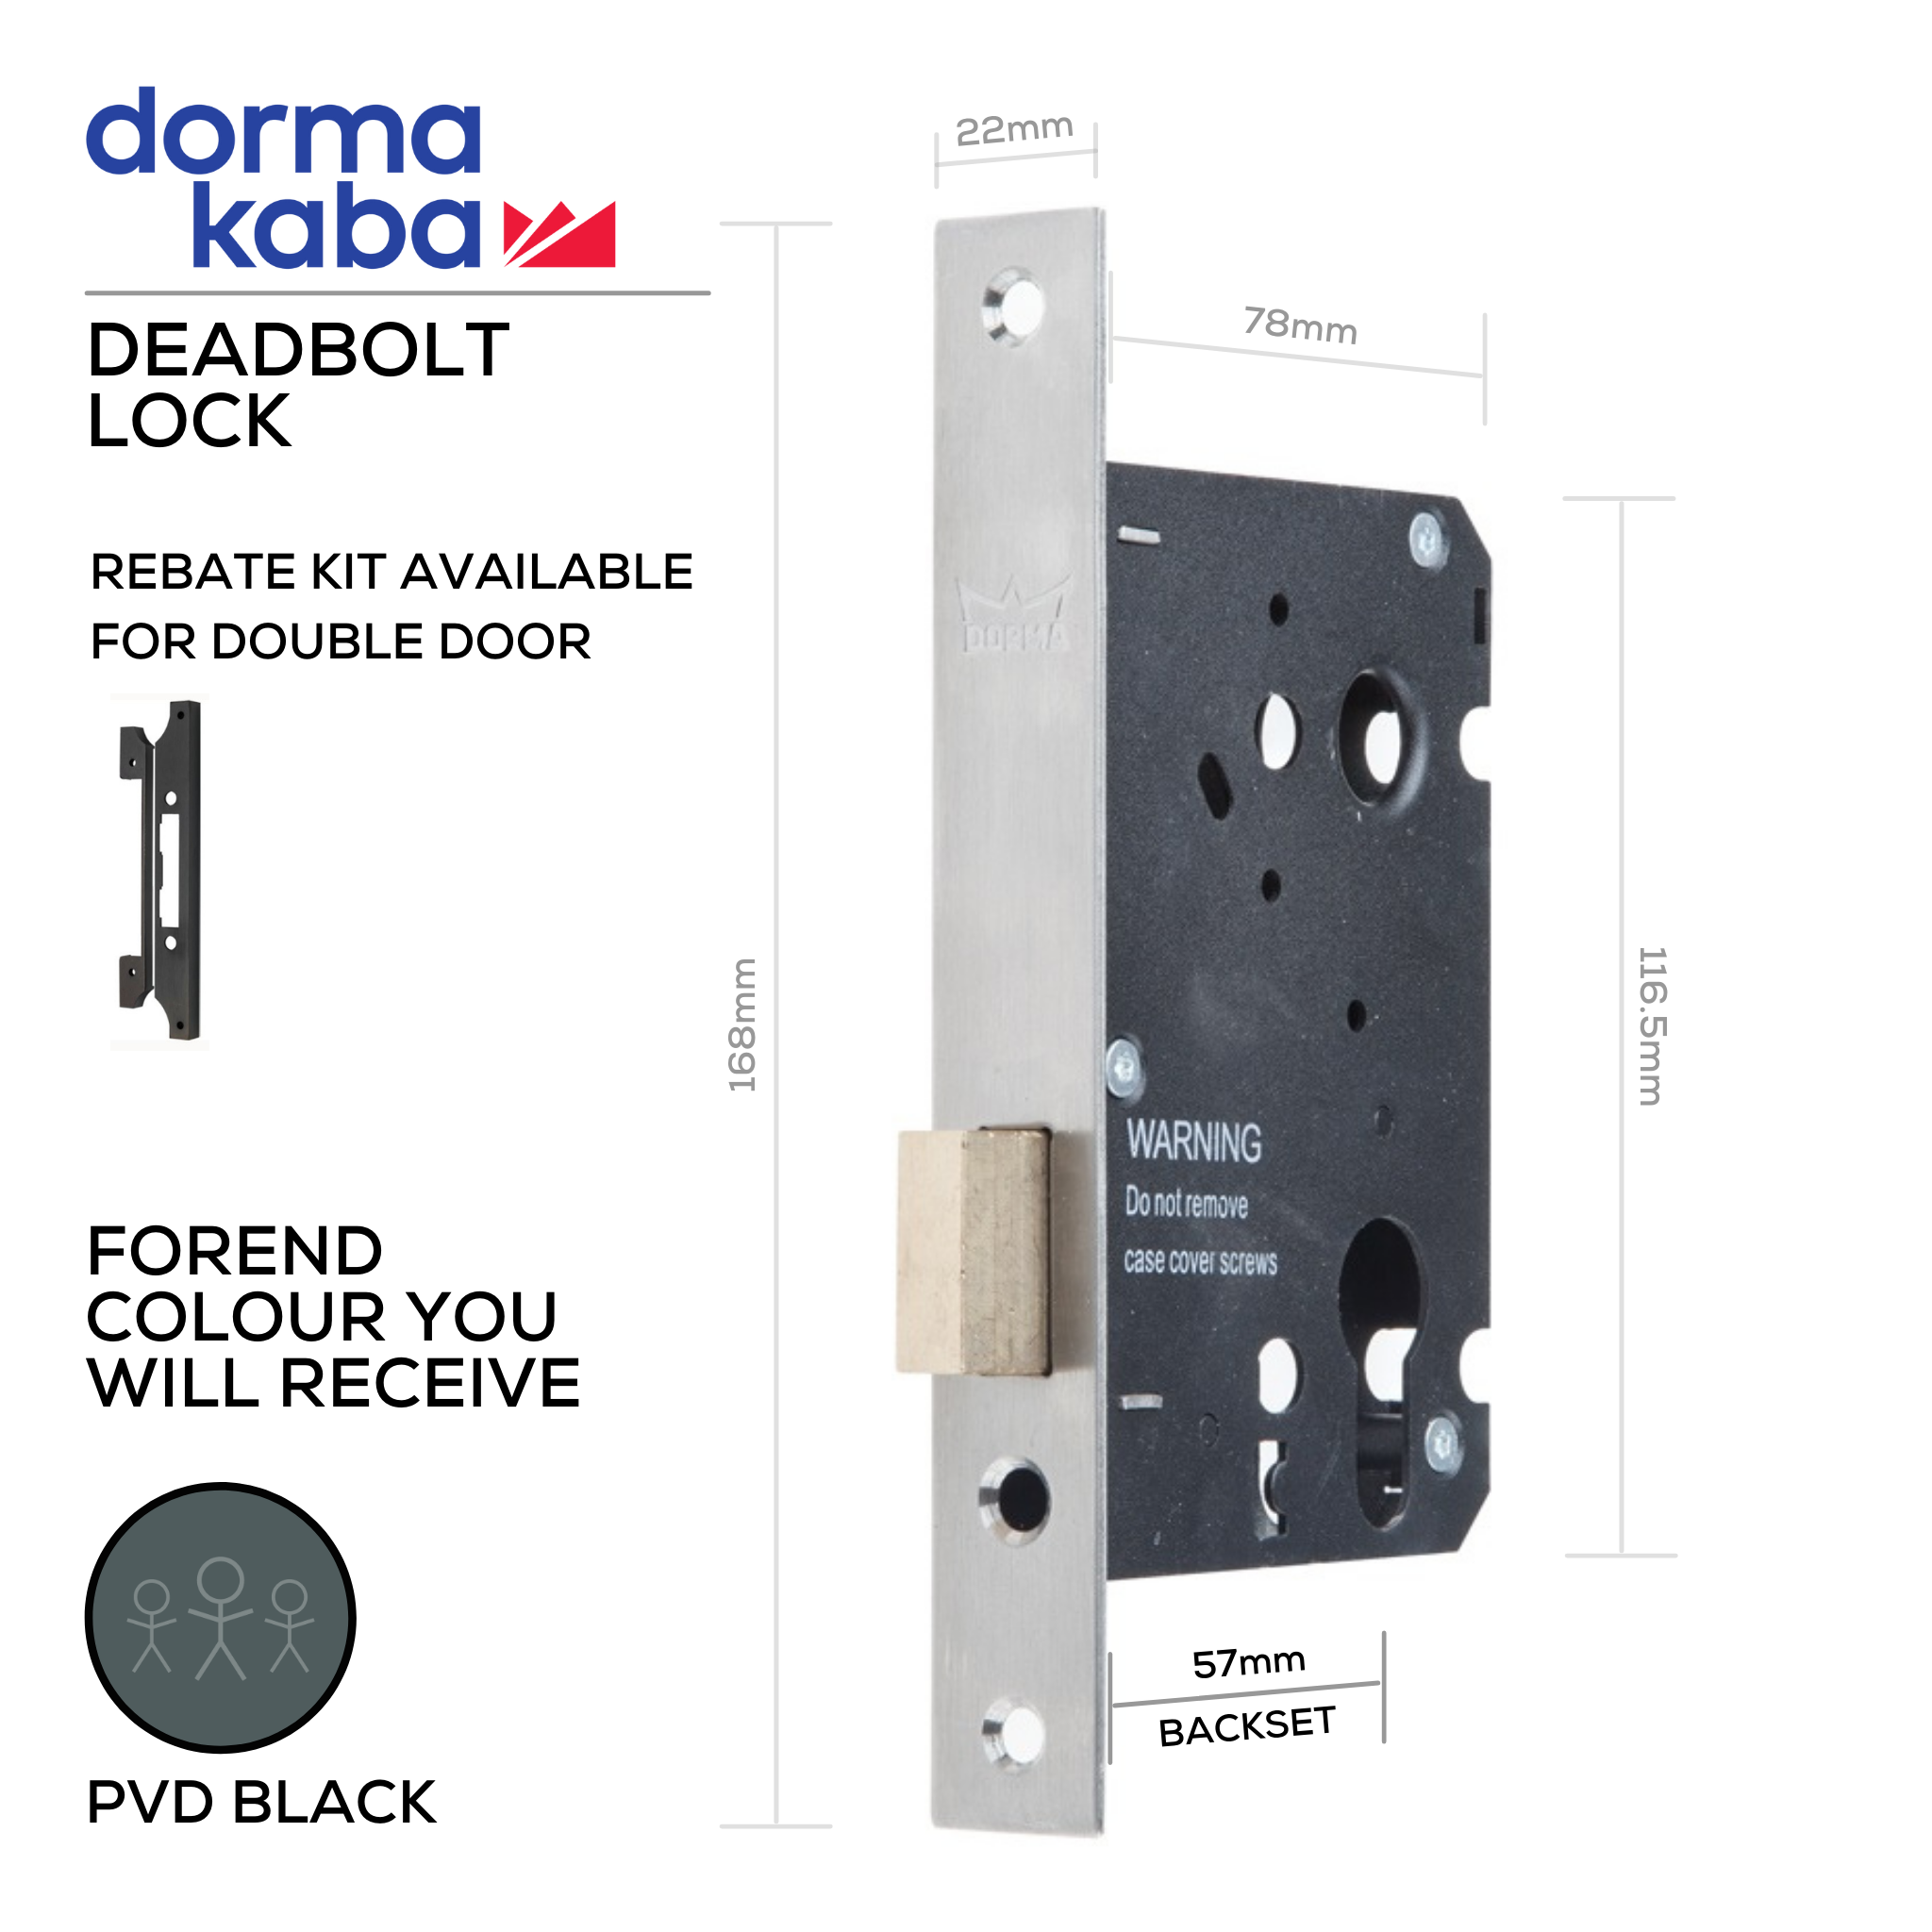 D037D PVD Black, Deadbolt Lock, Euro Cylinder, Excluding Cylinder, 57mm (Backset), PVD Black, DORMAKABA